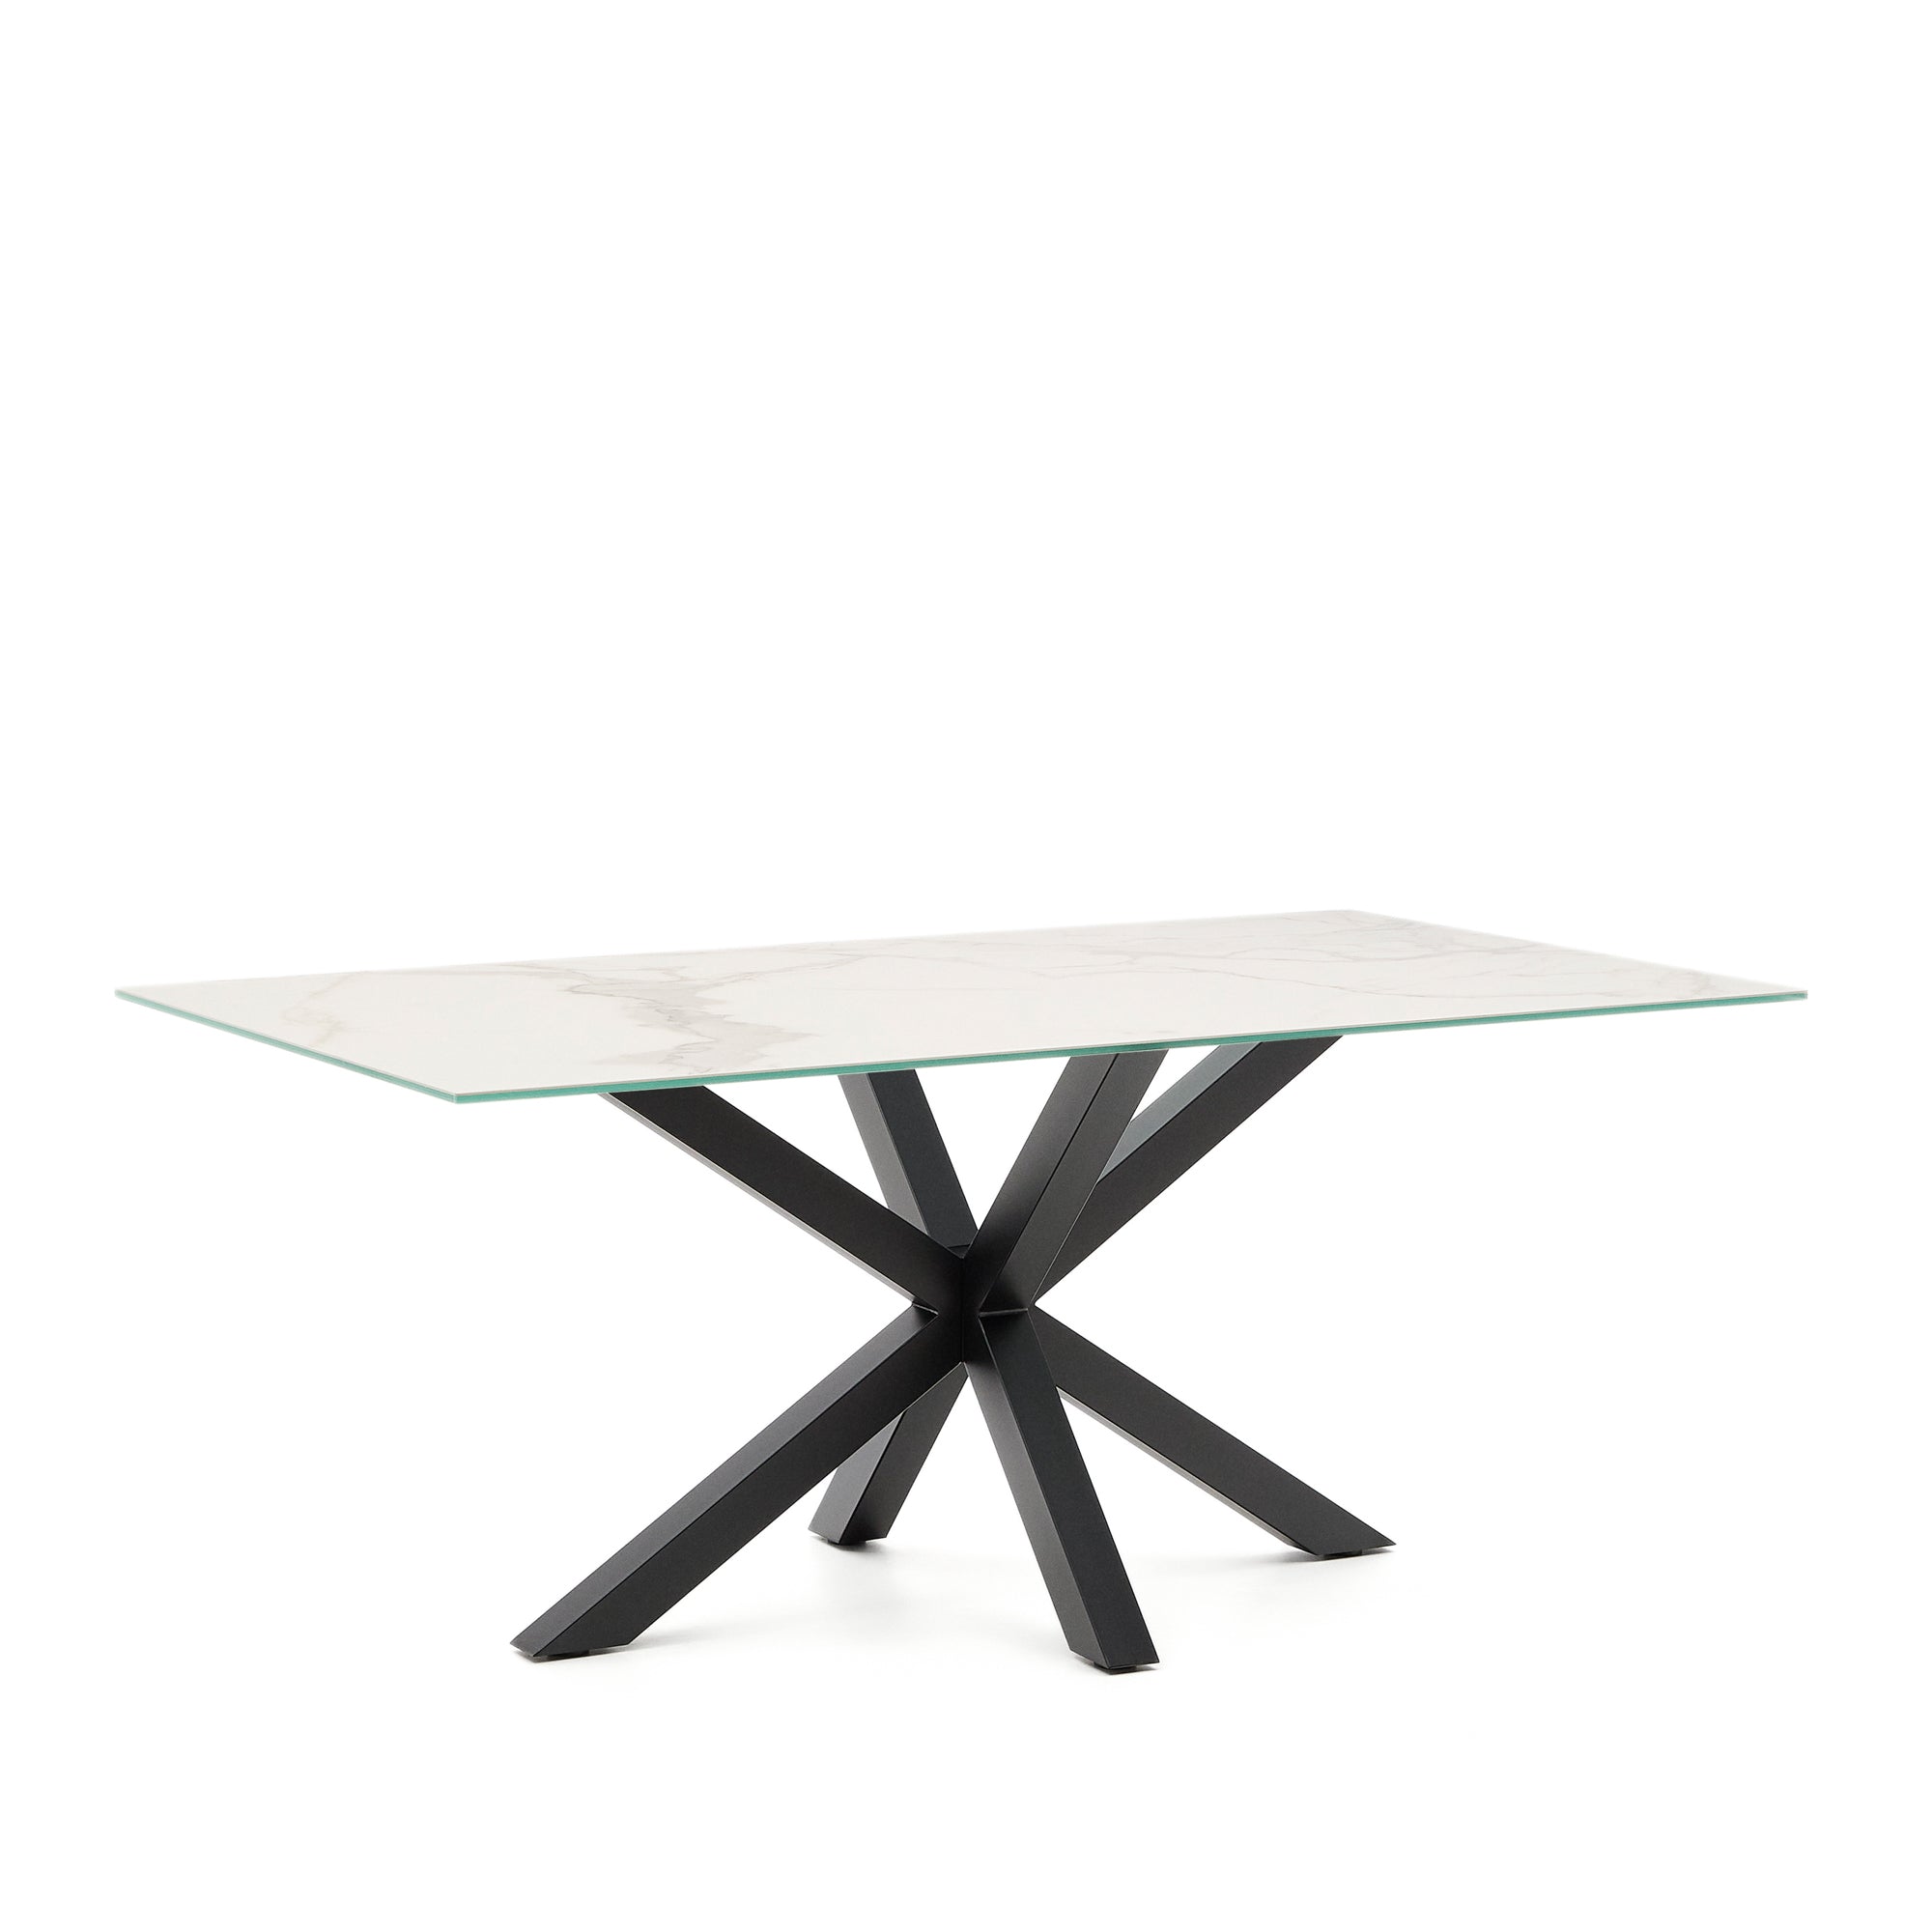 Argo table 180 cm porcelain with black legs